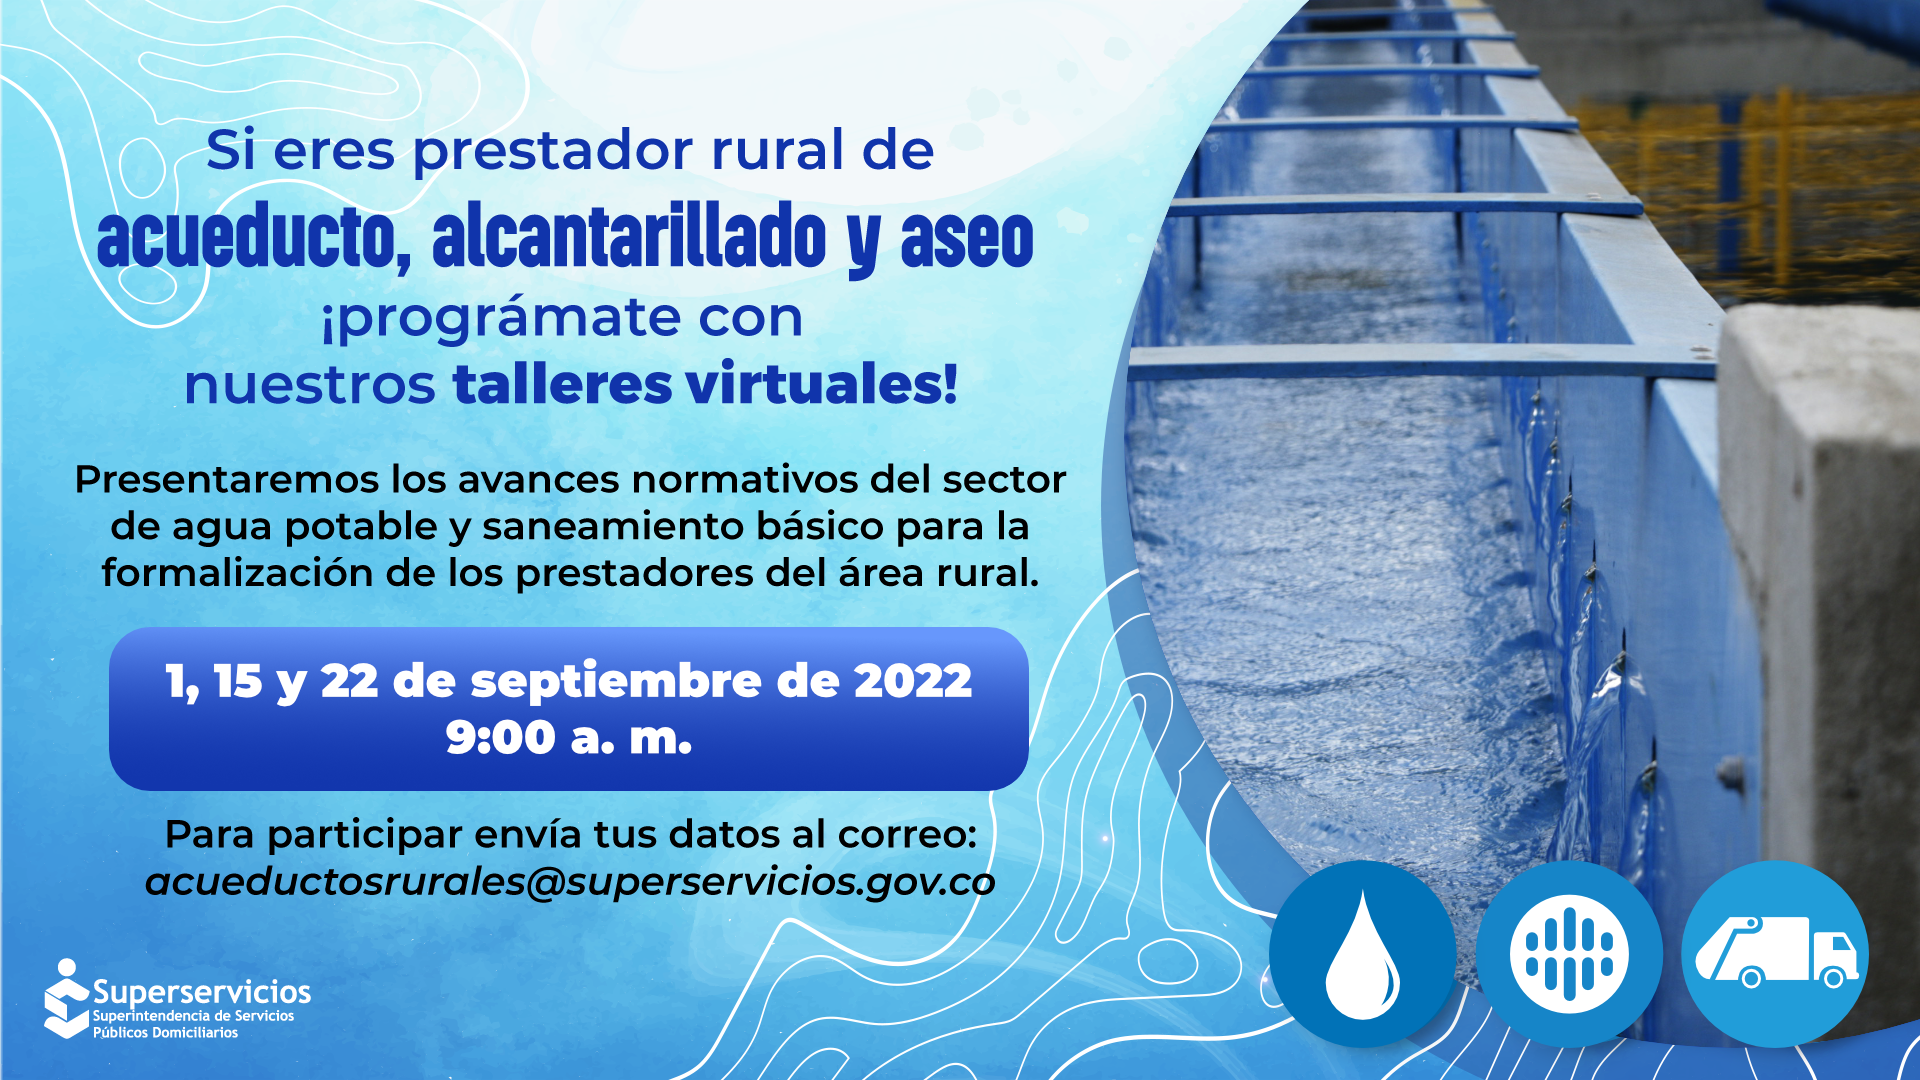 Taller virtual para prestadores rurales de Acueducto, Alcantarillado y Aseo, el 1, 15 y 22 de septiembre11
